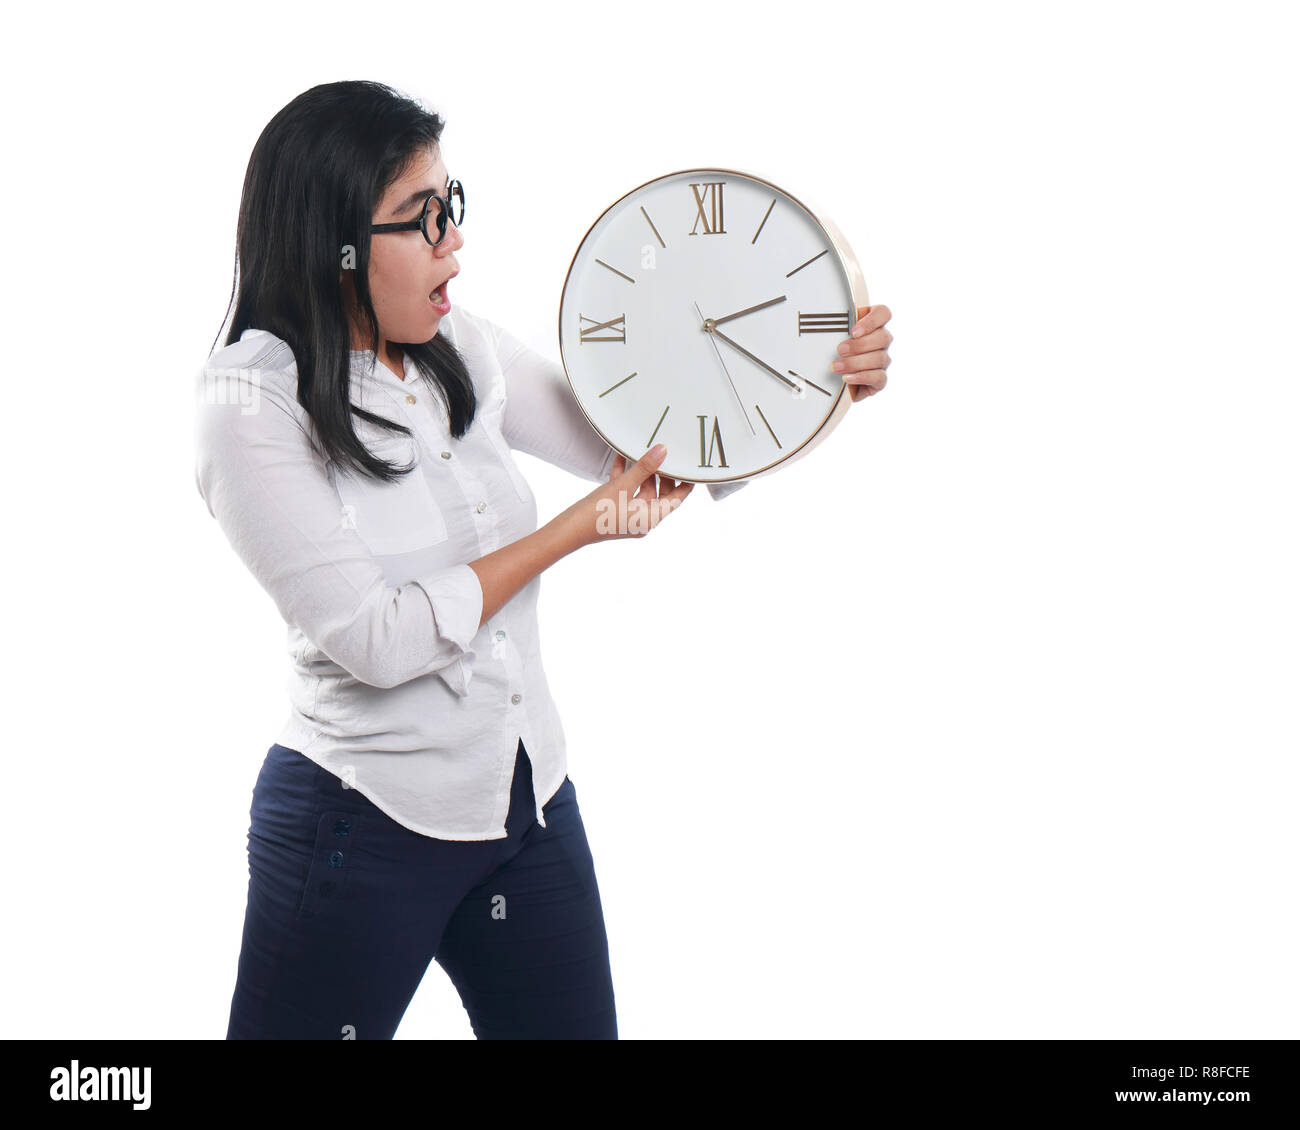 Foto Bild Portrait einer schönen jungen asiatischen Geschäftsfrau sah schockiert während der Zeit auf der Uhr, mit beiden Händen halten die Uhr, halb Körper Stockfoto